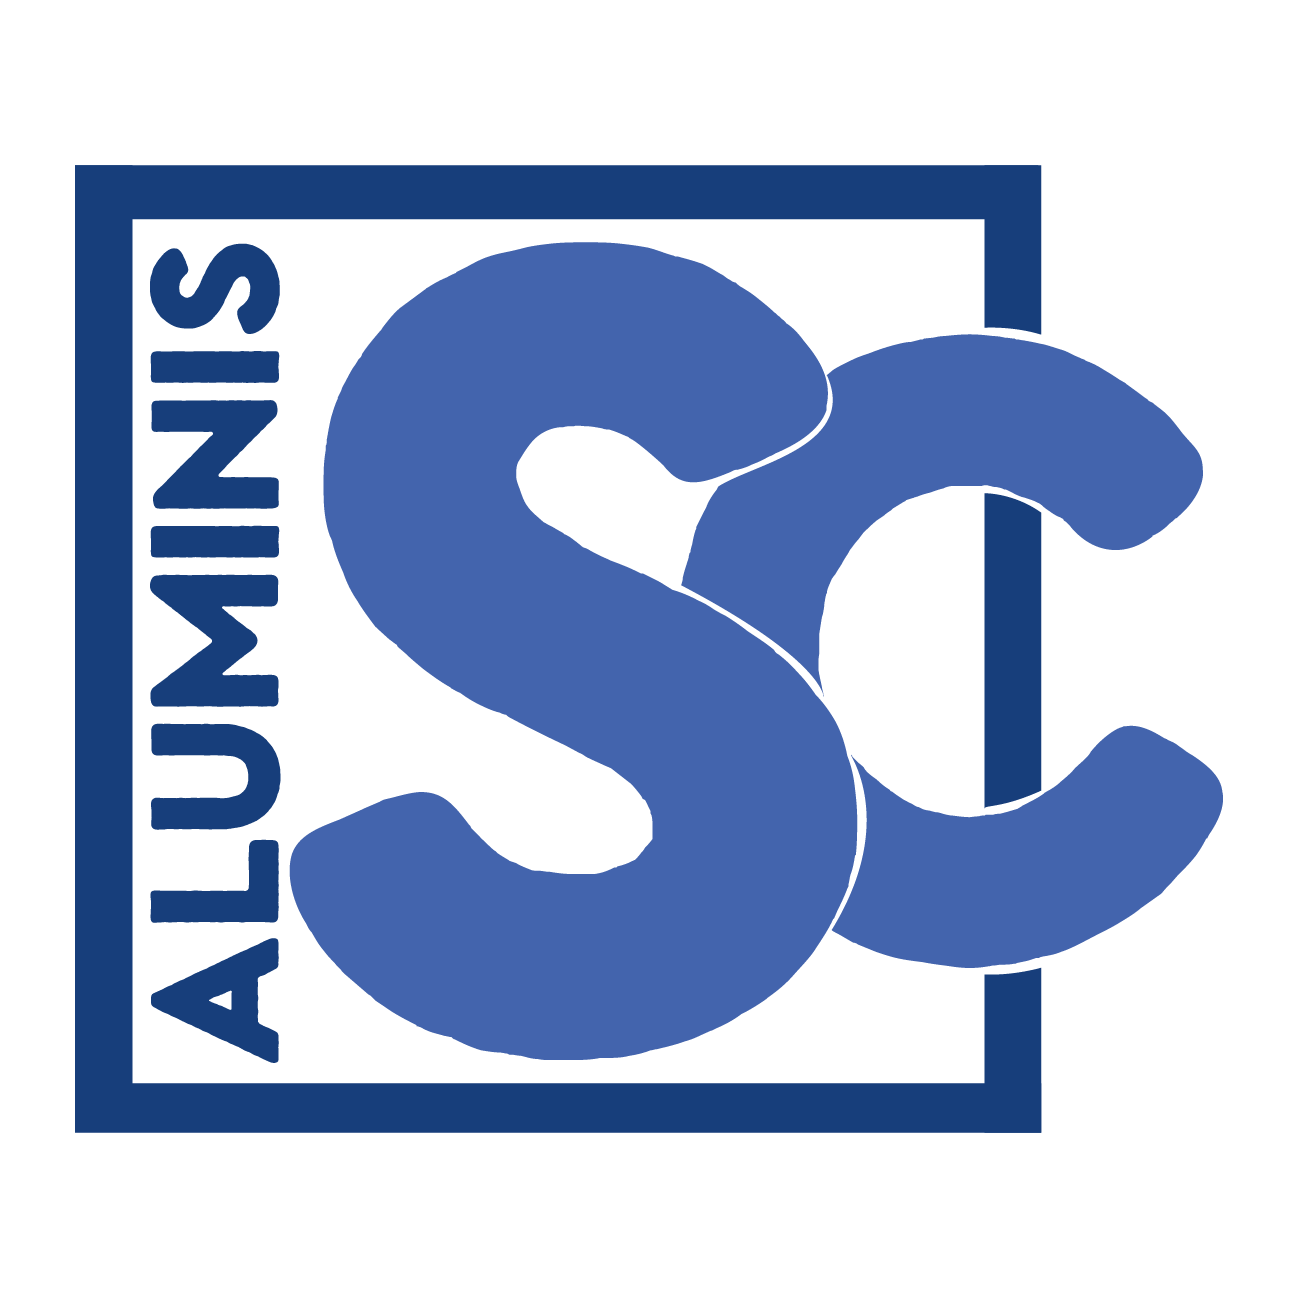 Aluminis Sc | Tu empresa de confianza